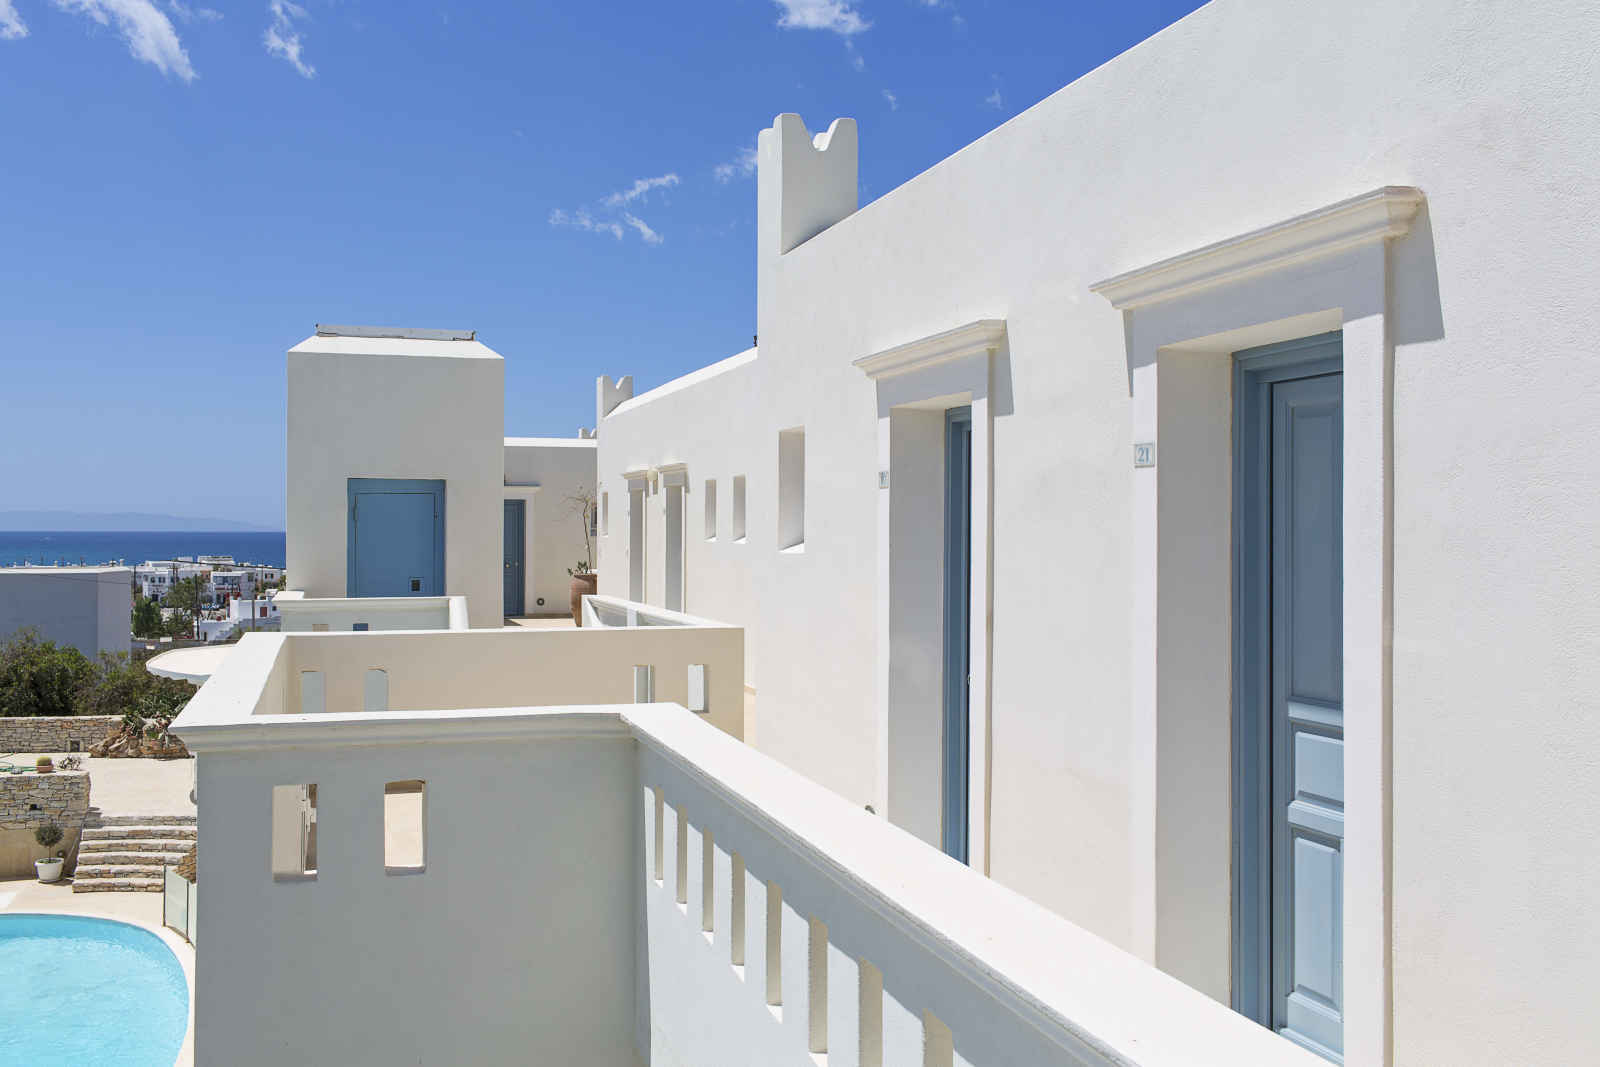 Grèce - Iles grecques - Les Cyclades - Naxos - Hôtel Lagos Mare 4*